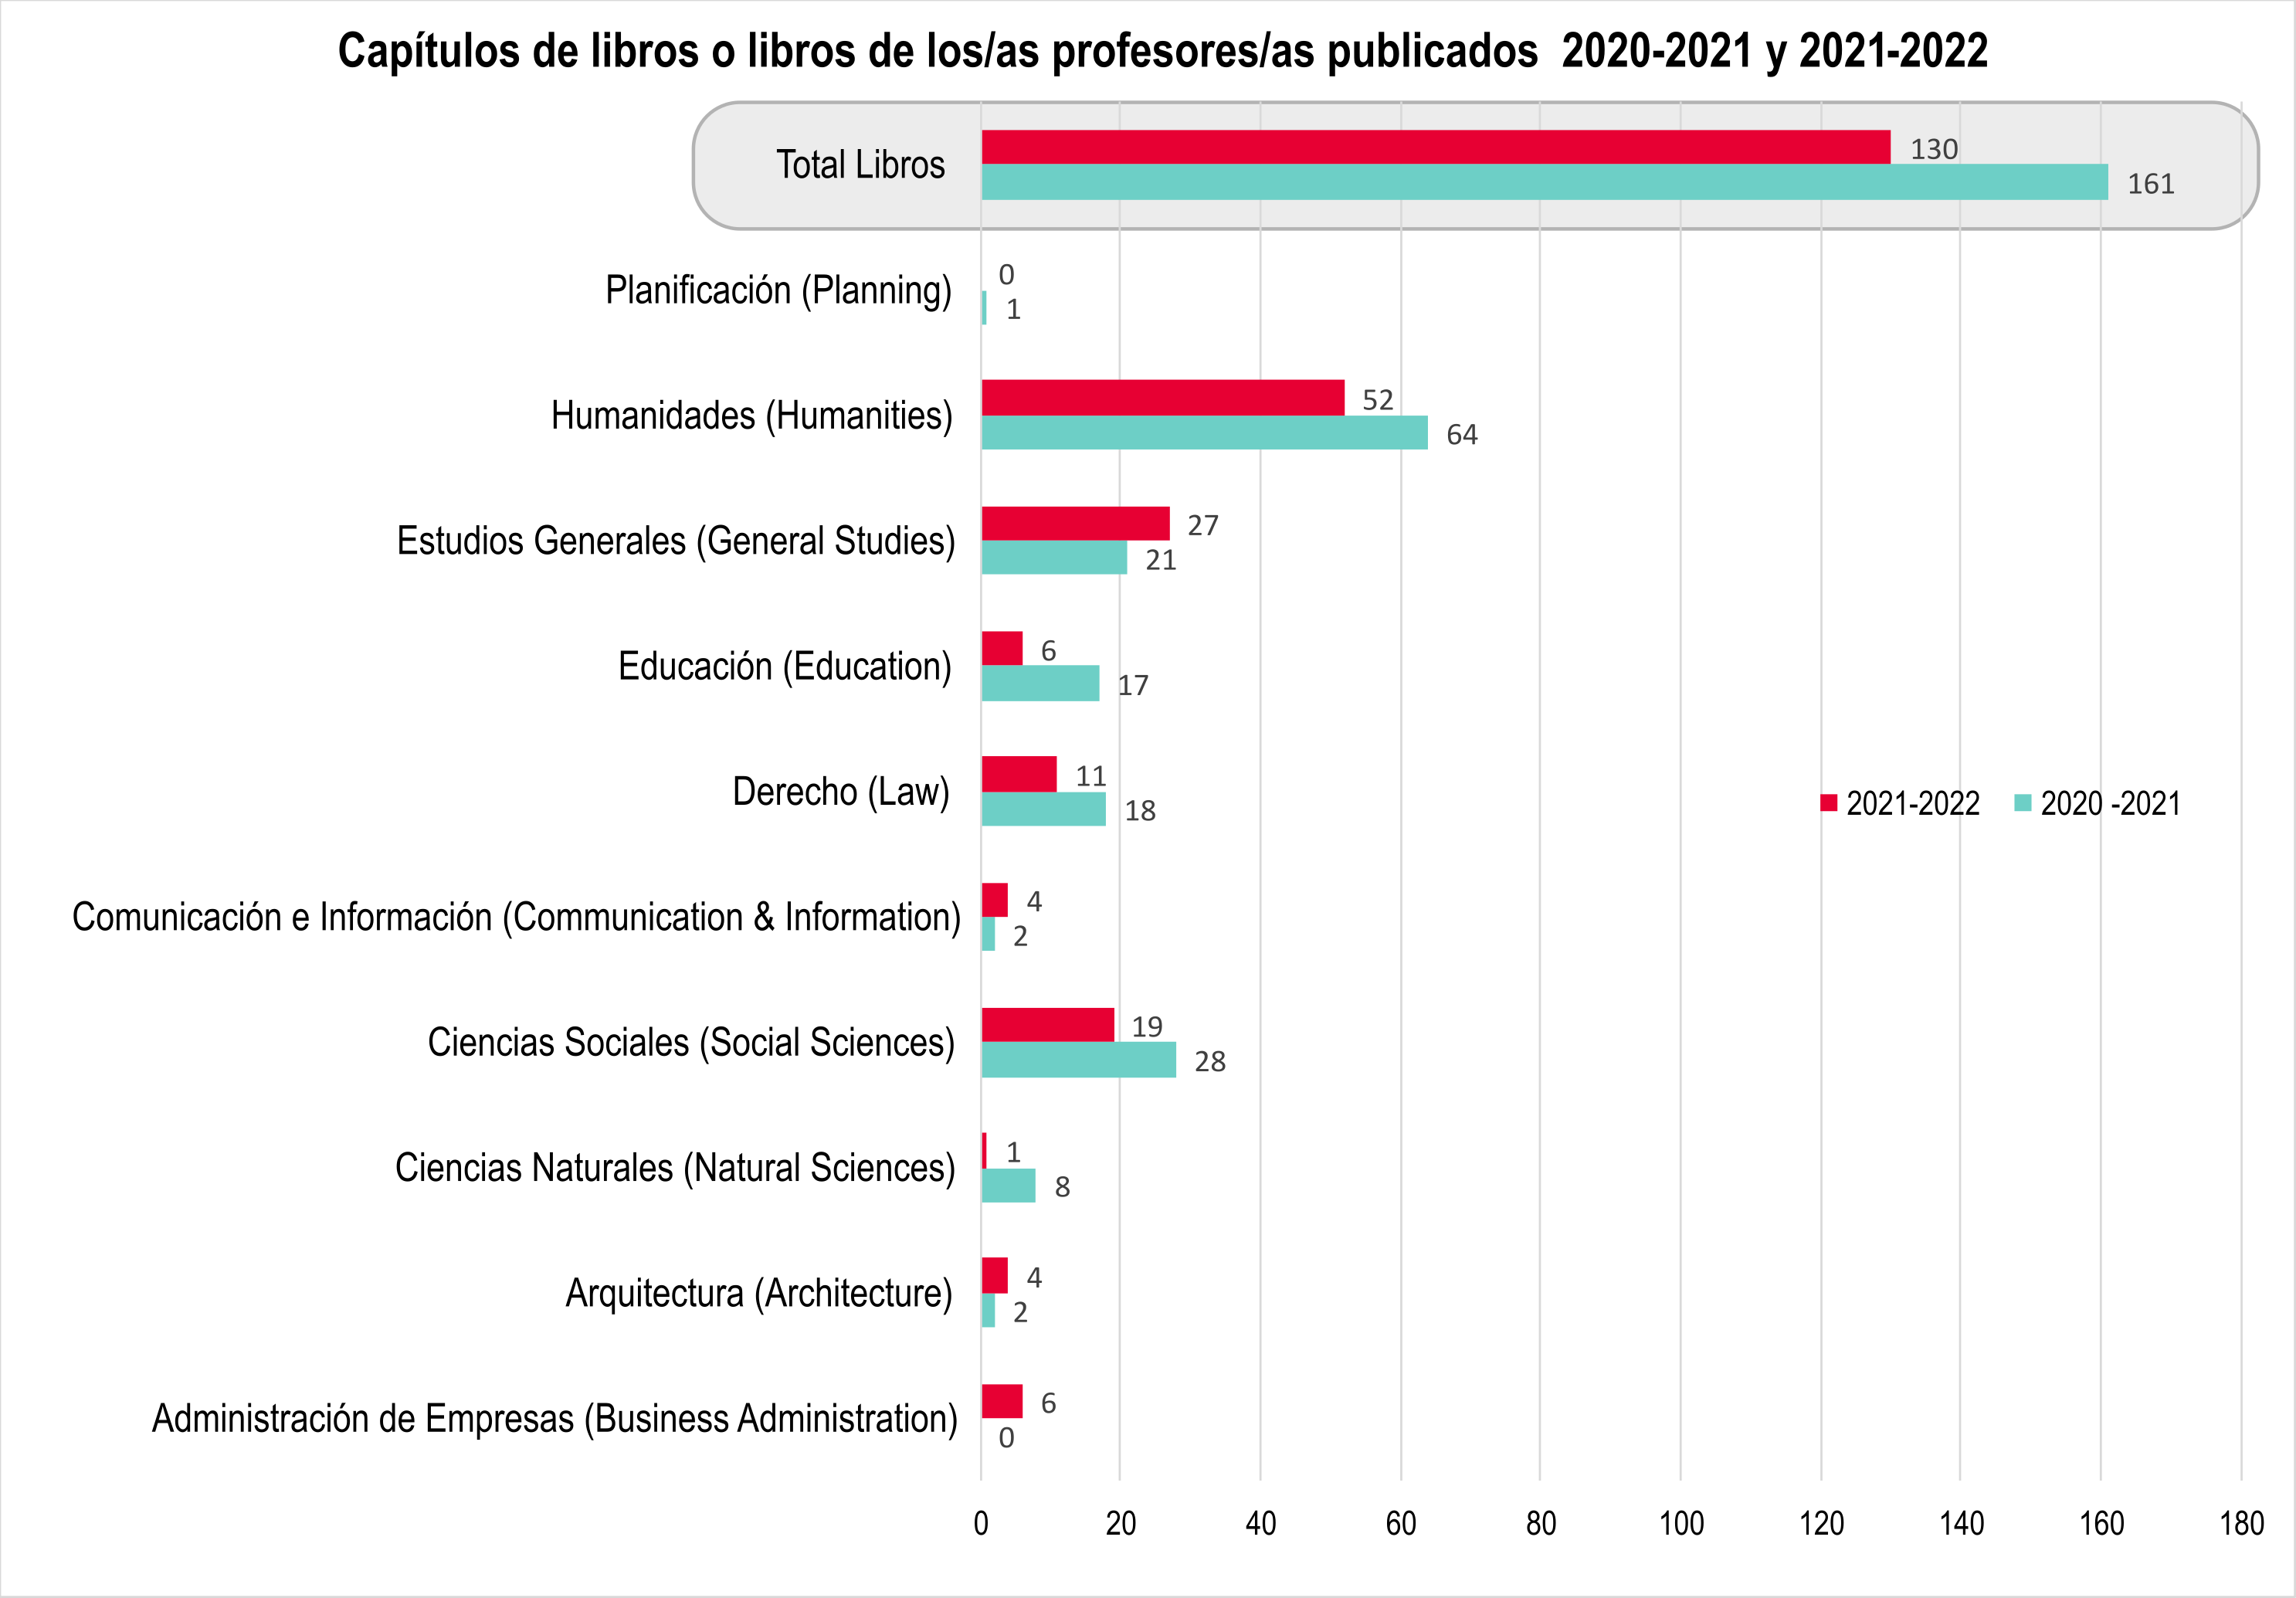 Gráfica de barra que muestra la cantidad de libros y/o capítulos de libros publicados por profesores en 2020-21 y 2021-22 (un total de 130 libros y/o capítulos publicados en 2021-2022 y 161 libros y/o capítulos en 2020-2021)